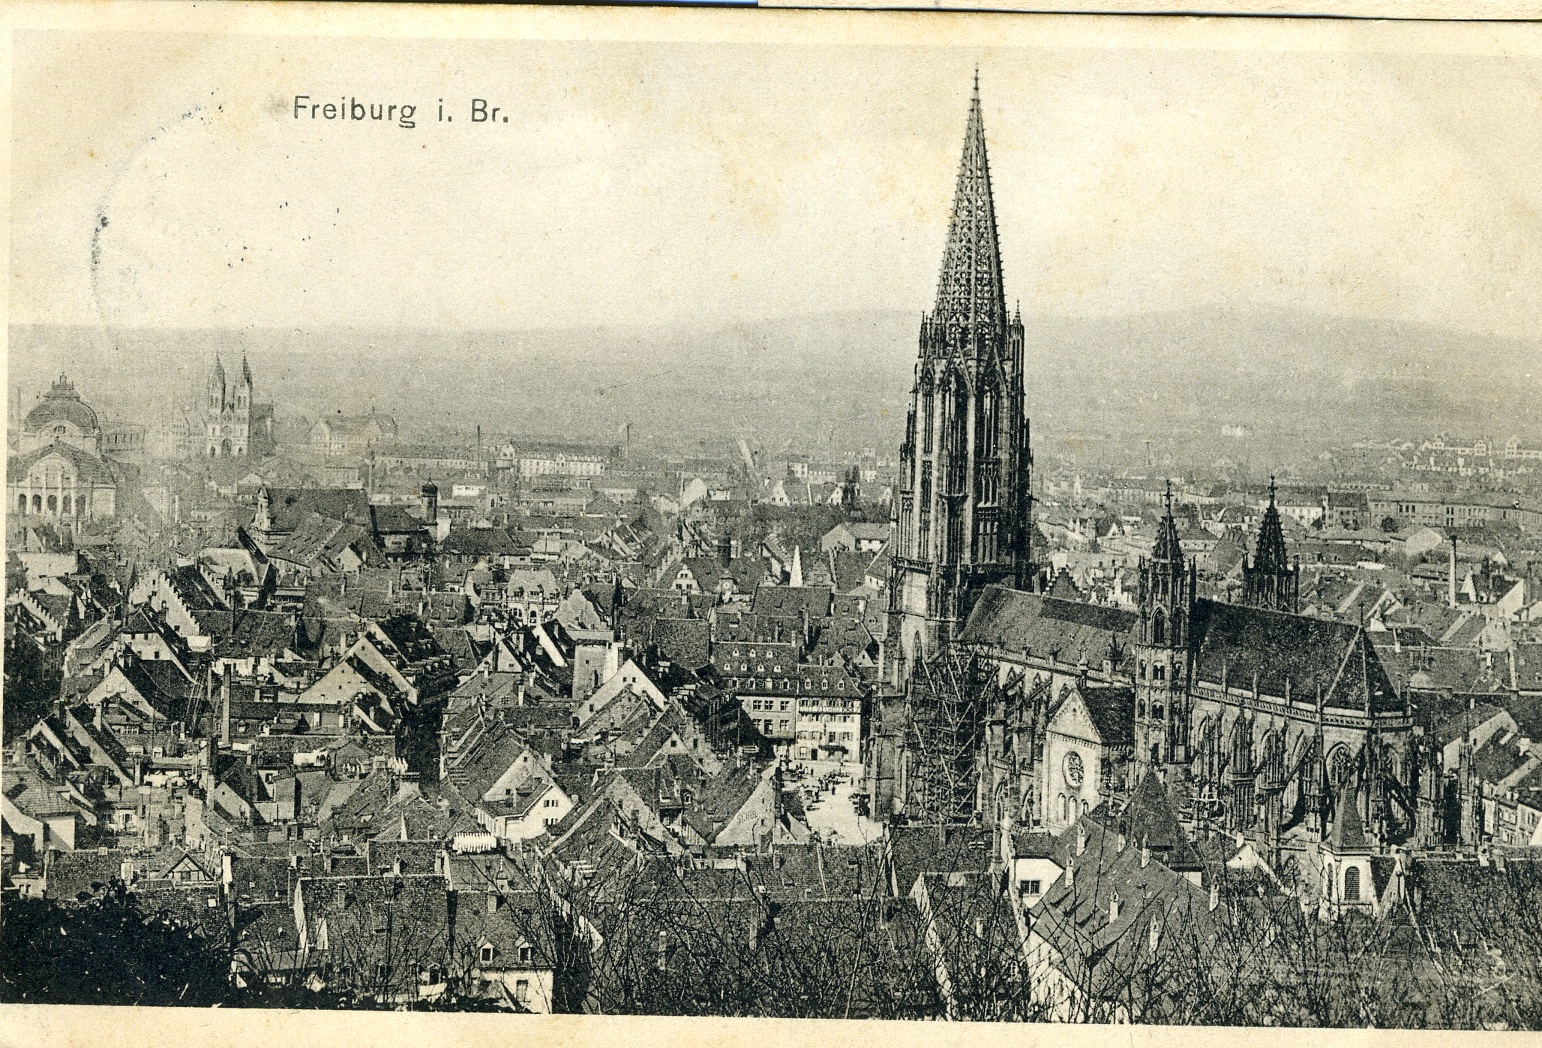 Feldpostkarte aus Freiburg im Breisgau 1915 (Historisches Museum der Pfalz, Speyer CC BY)